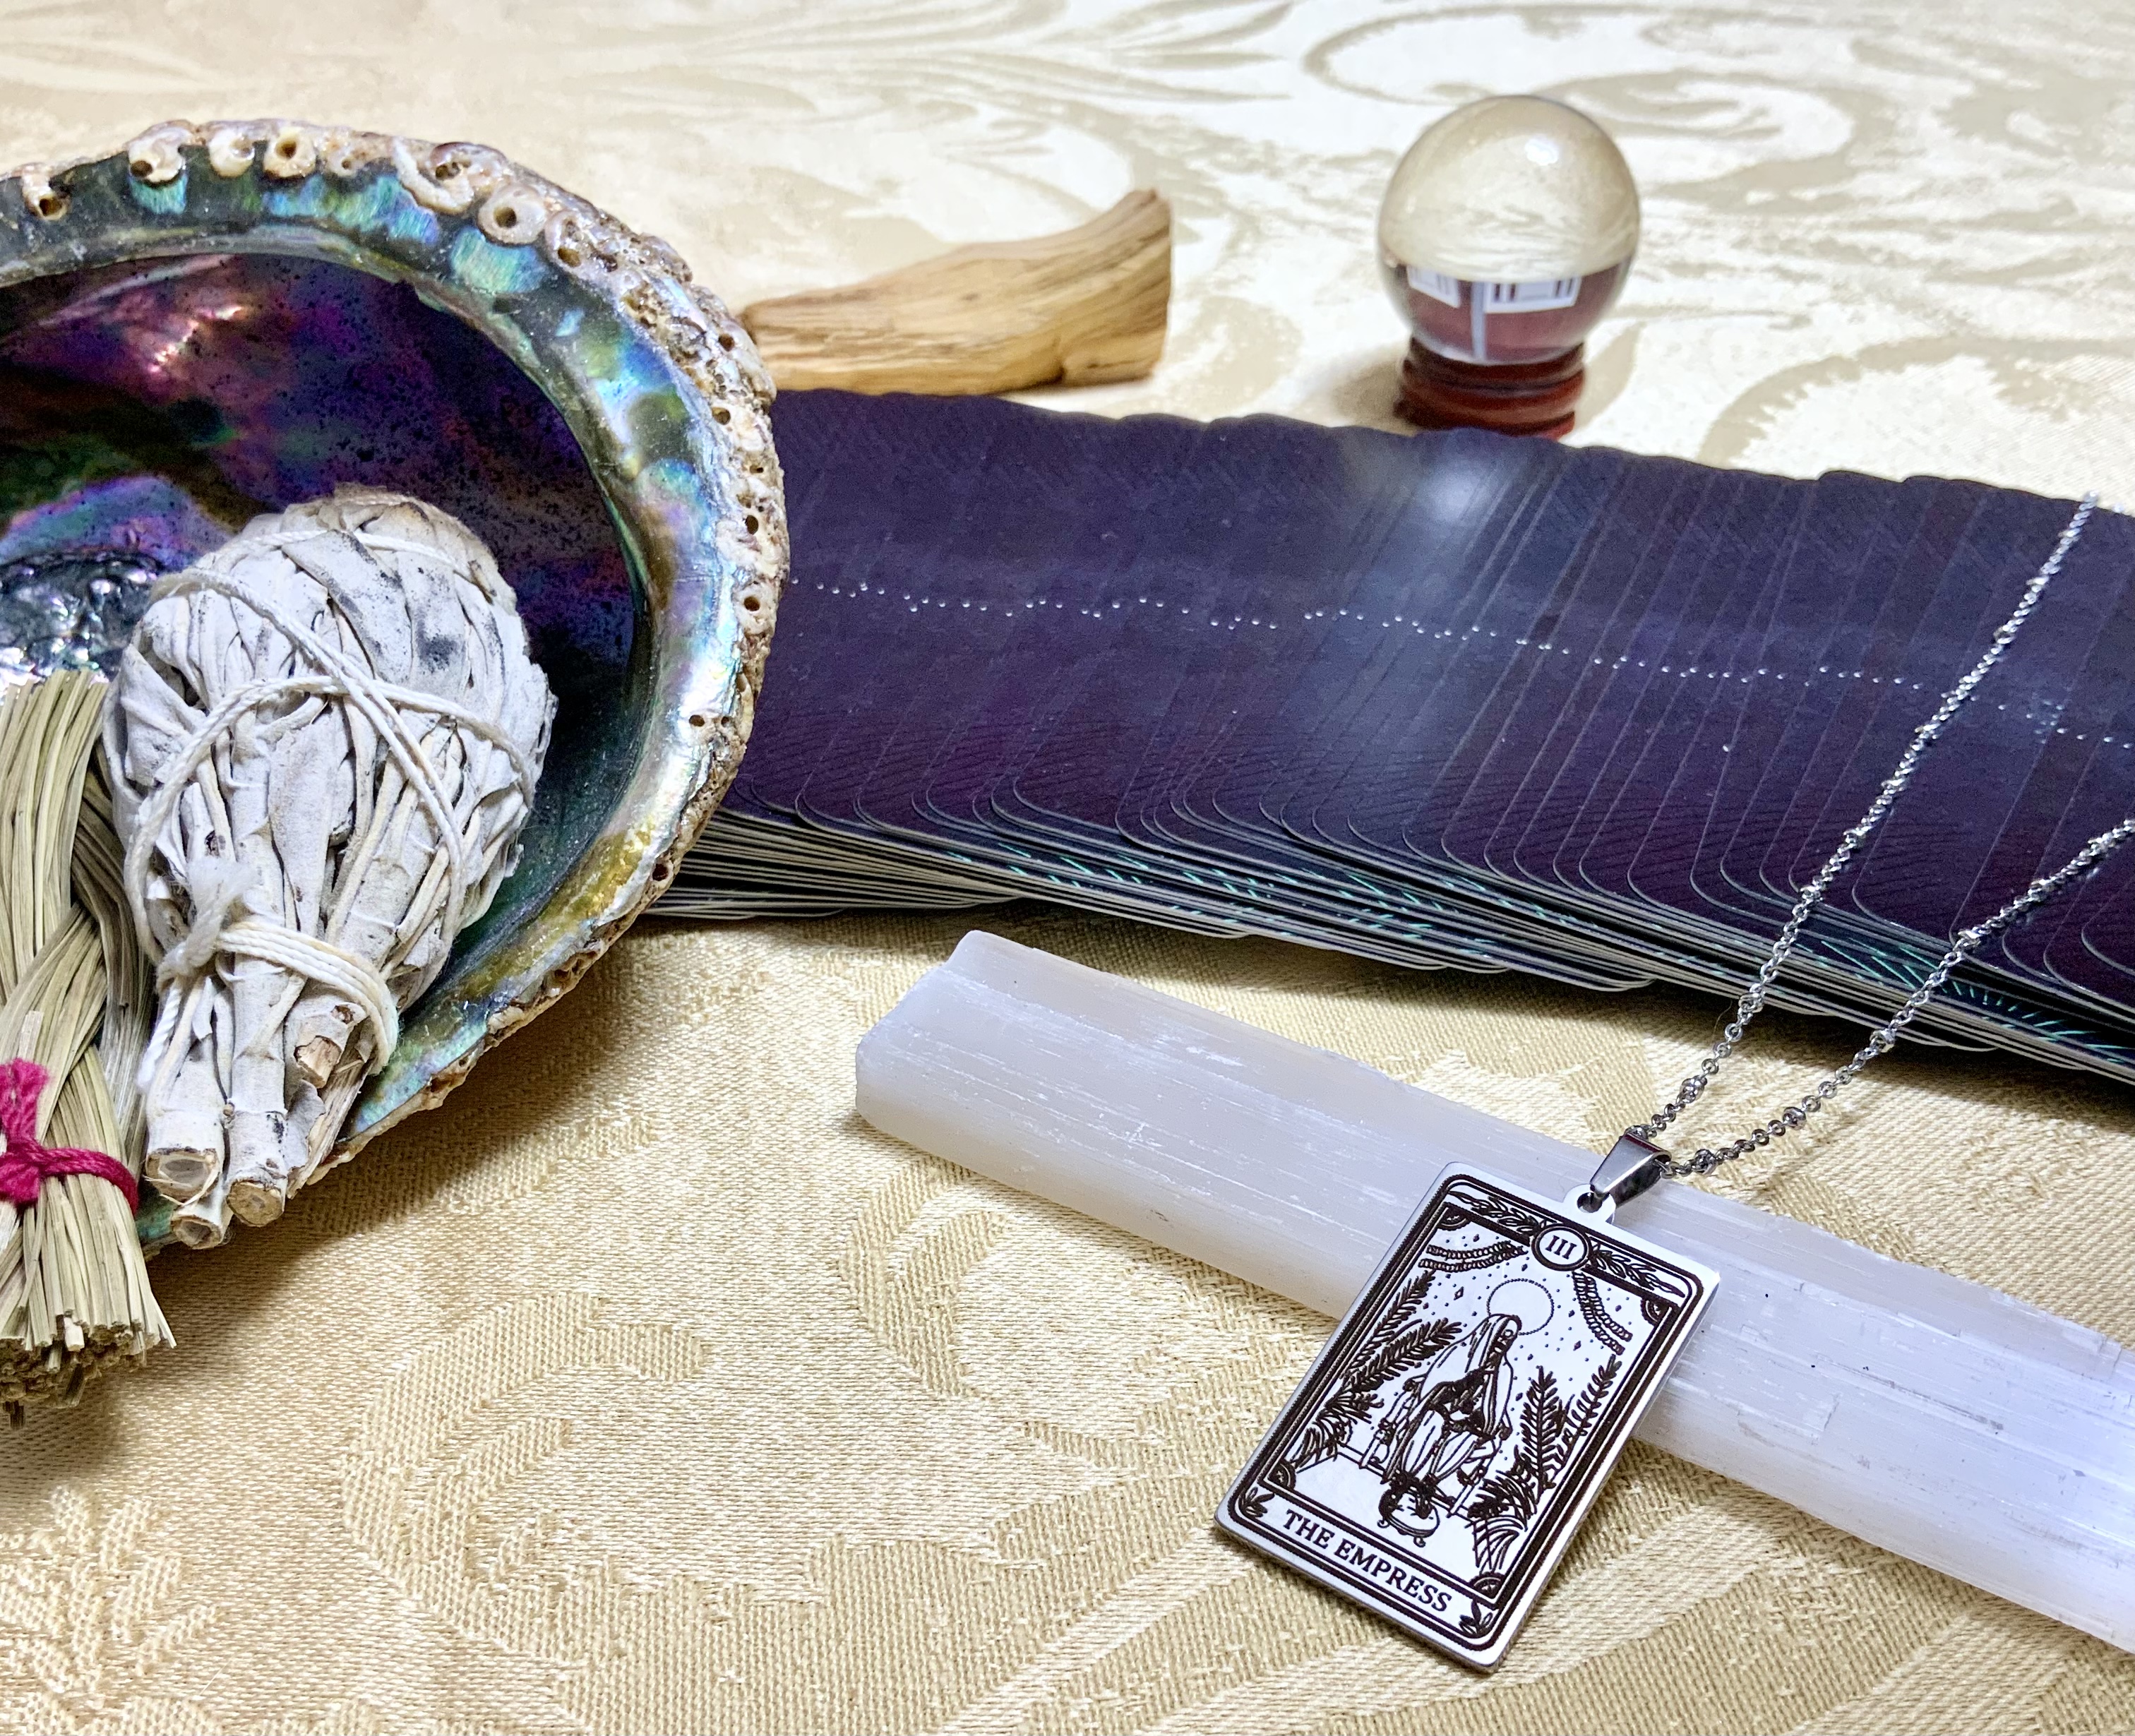 The Empress Tarot Card Necklace